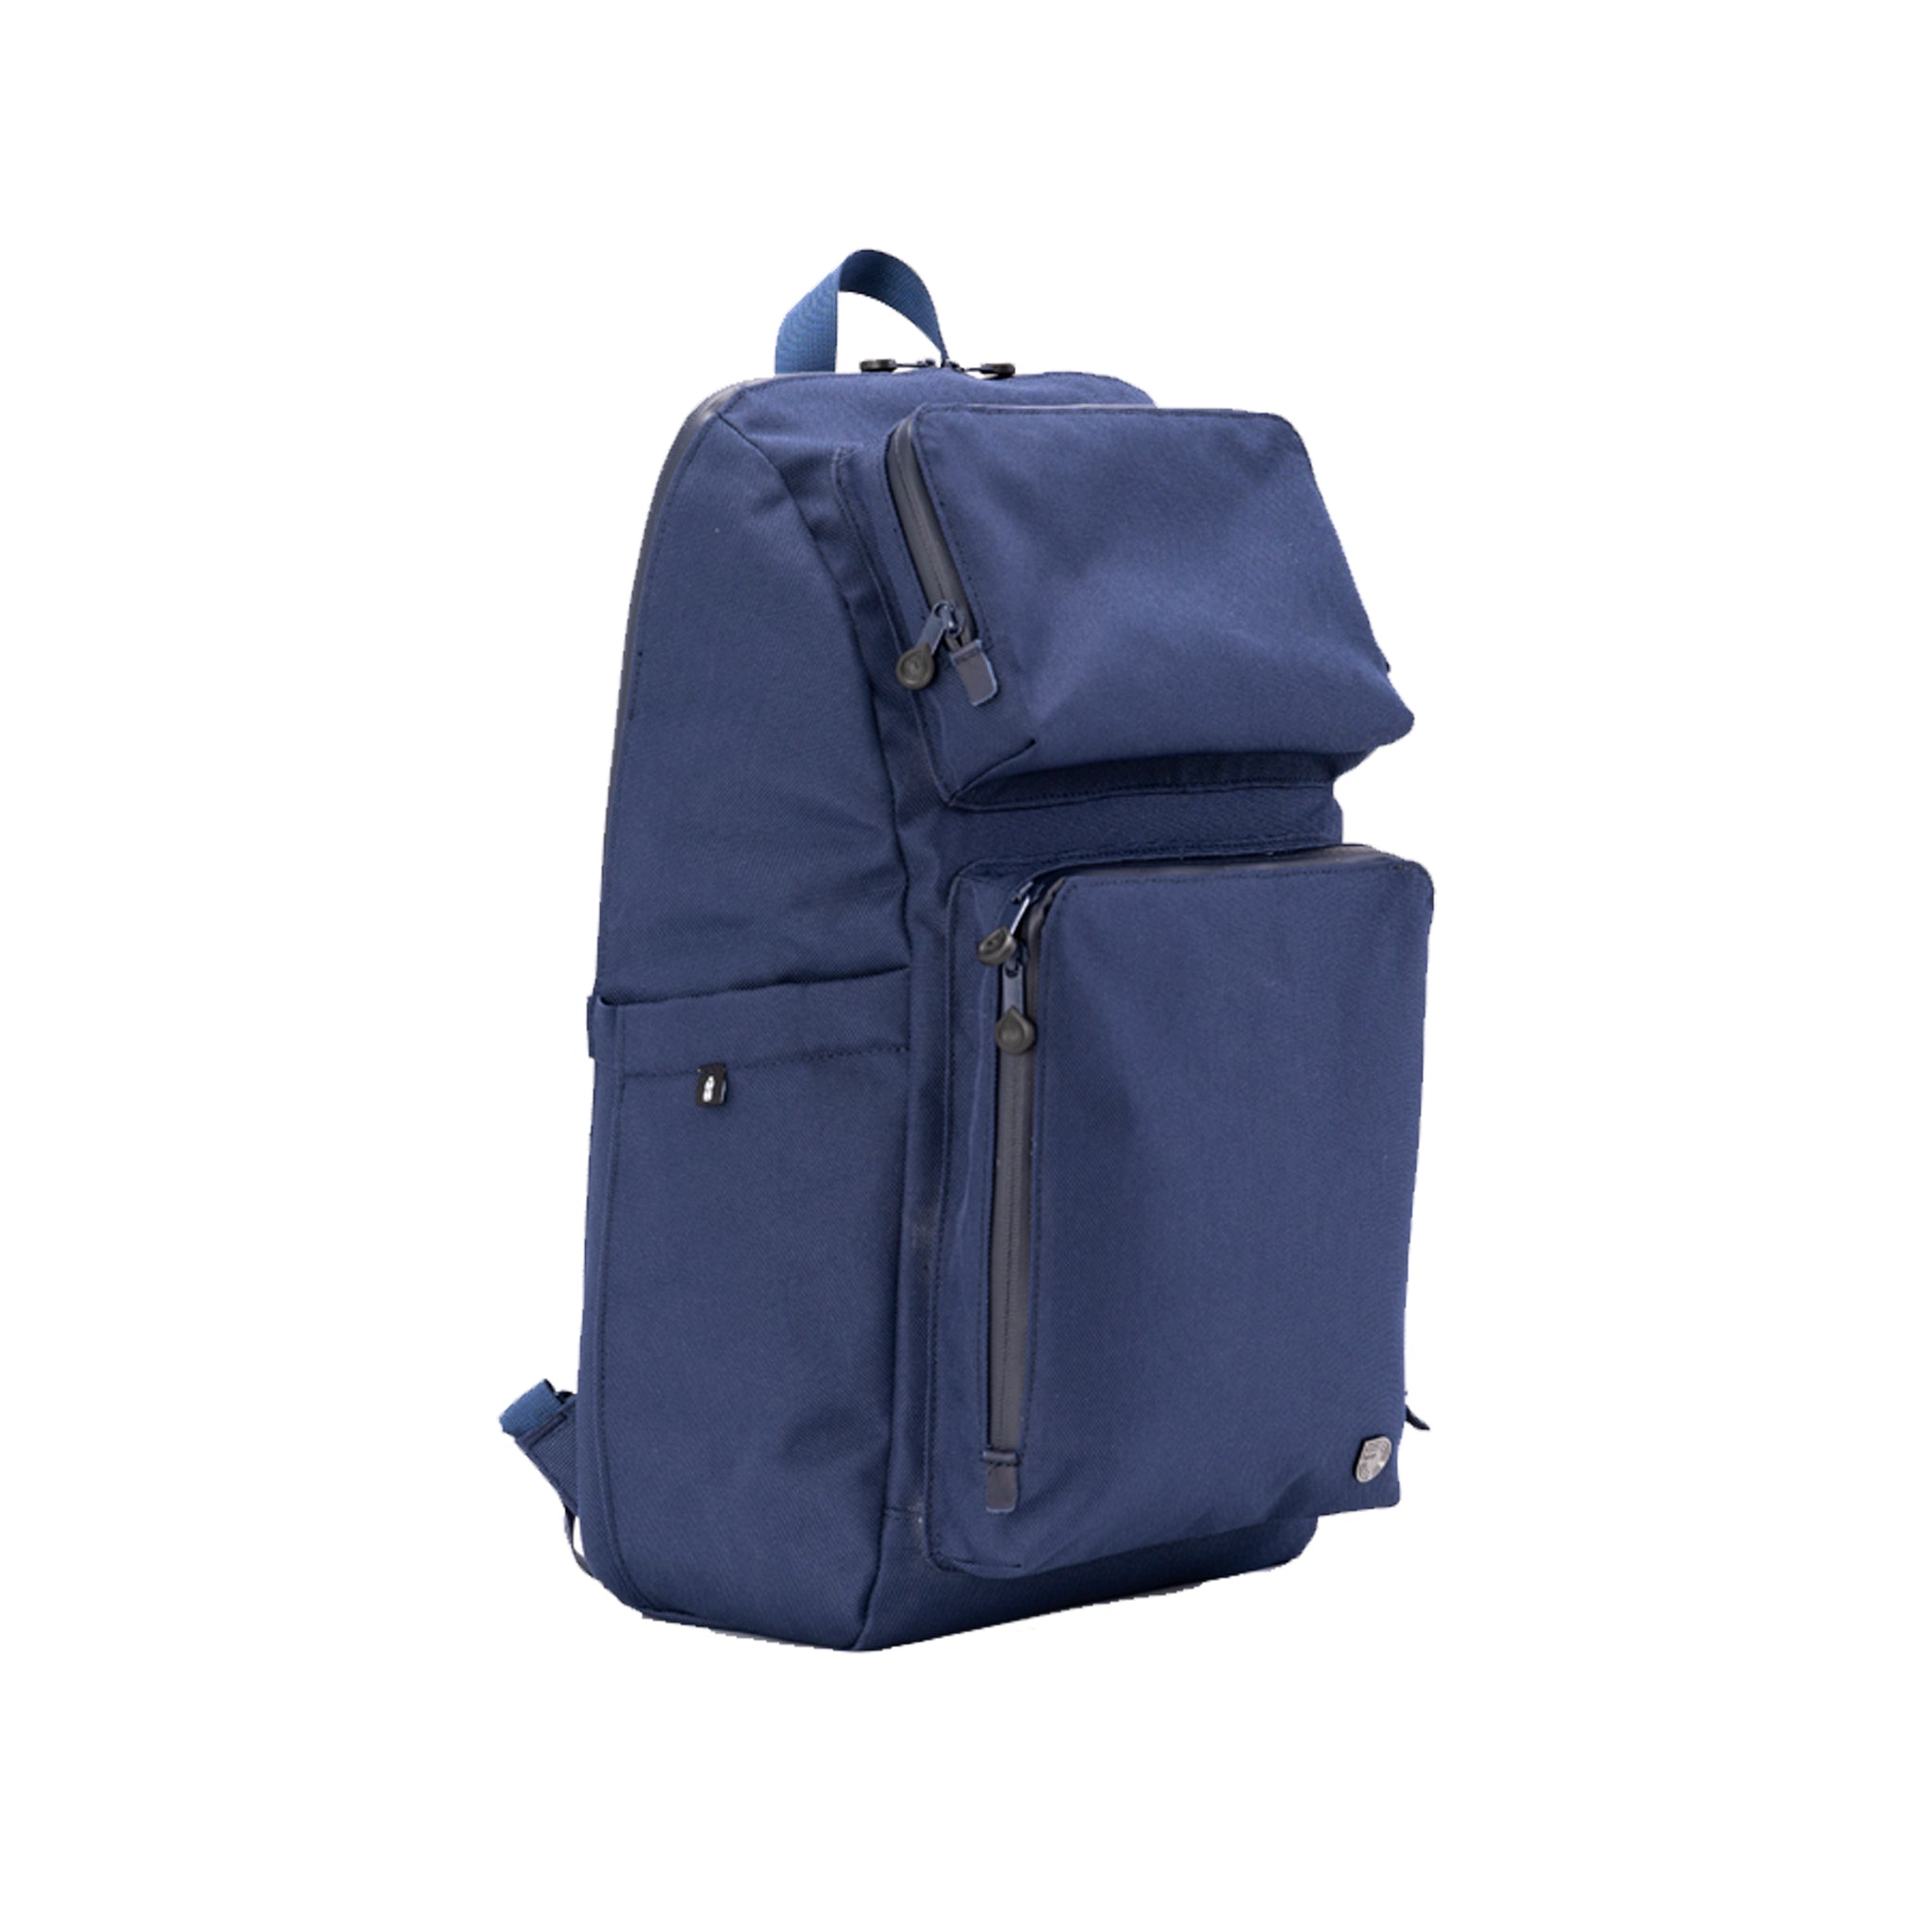 MUB Bibi Regular - Classic Blue Multi-functional Bag for Men